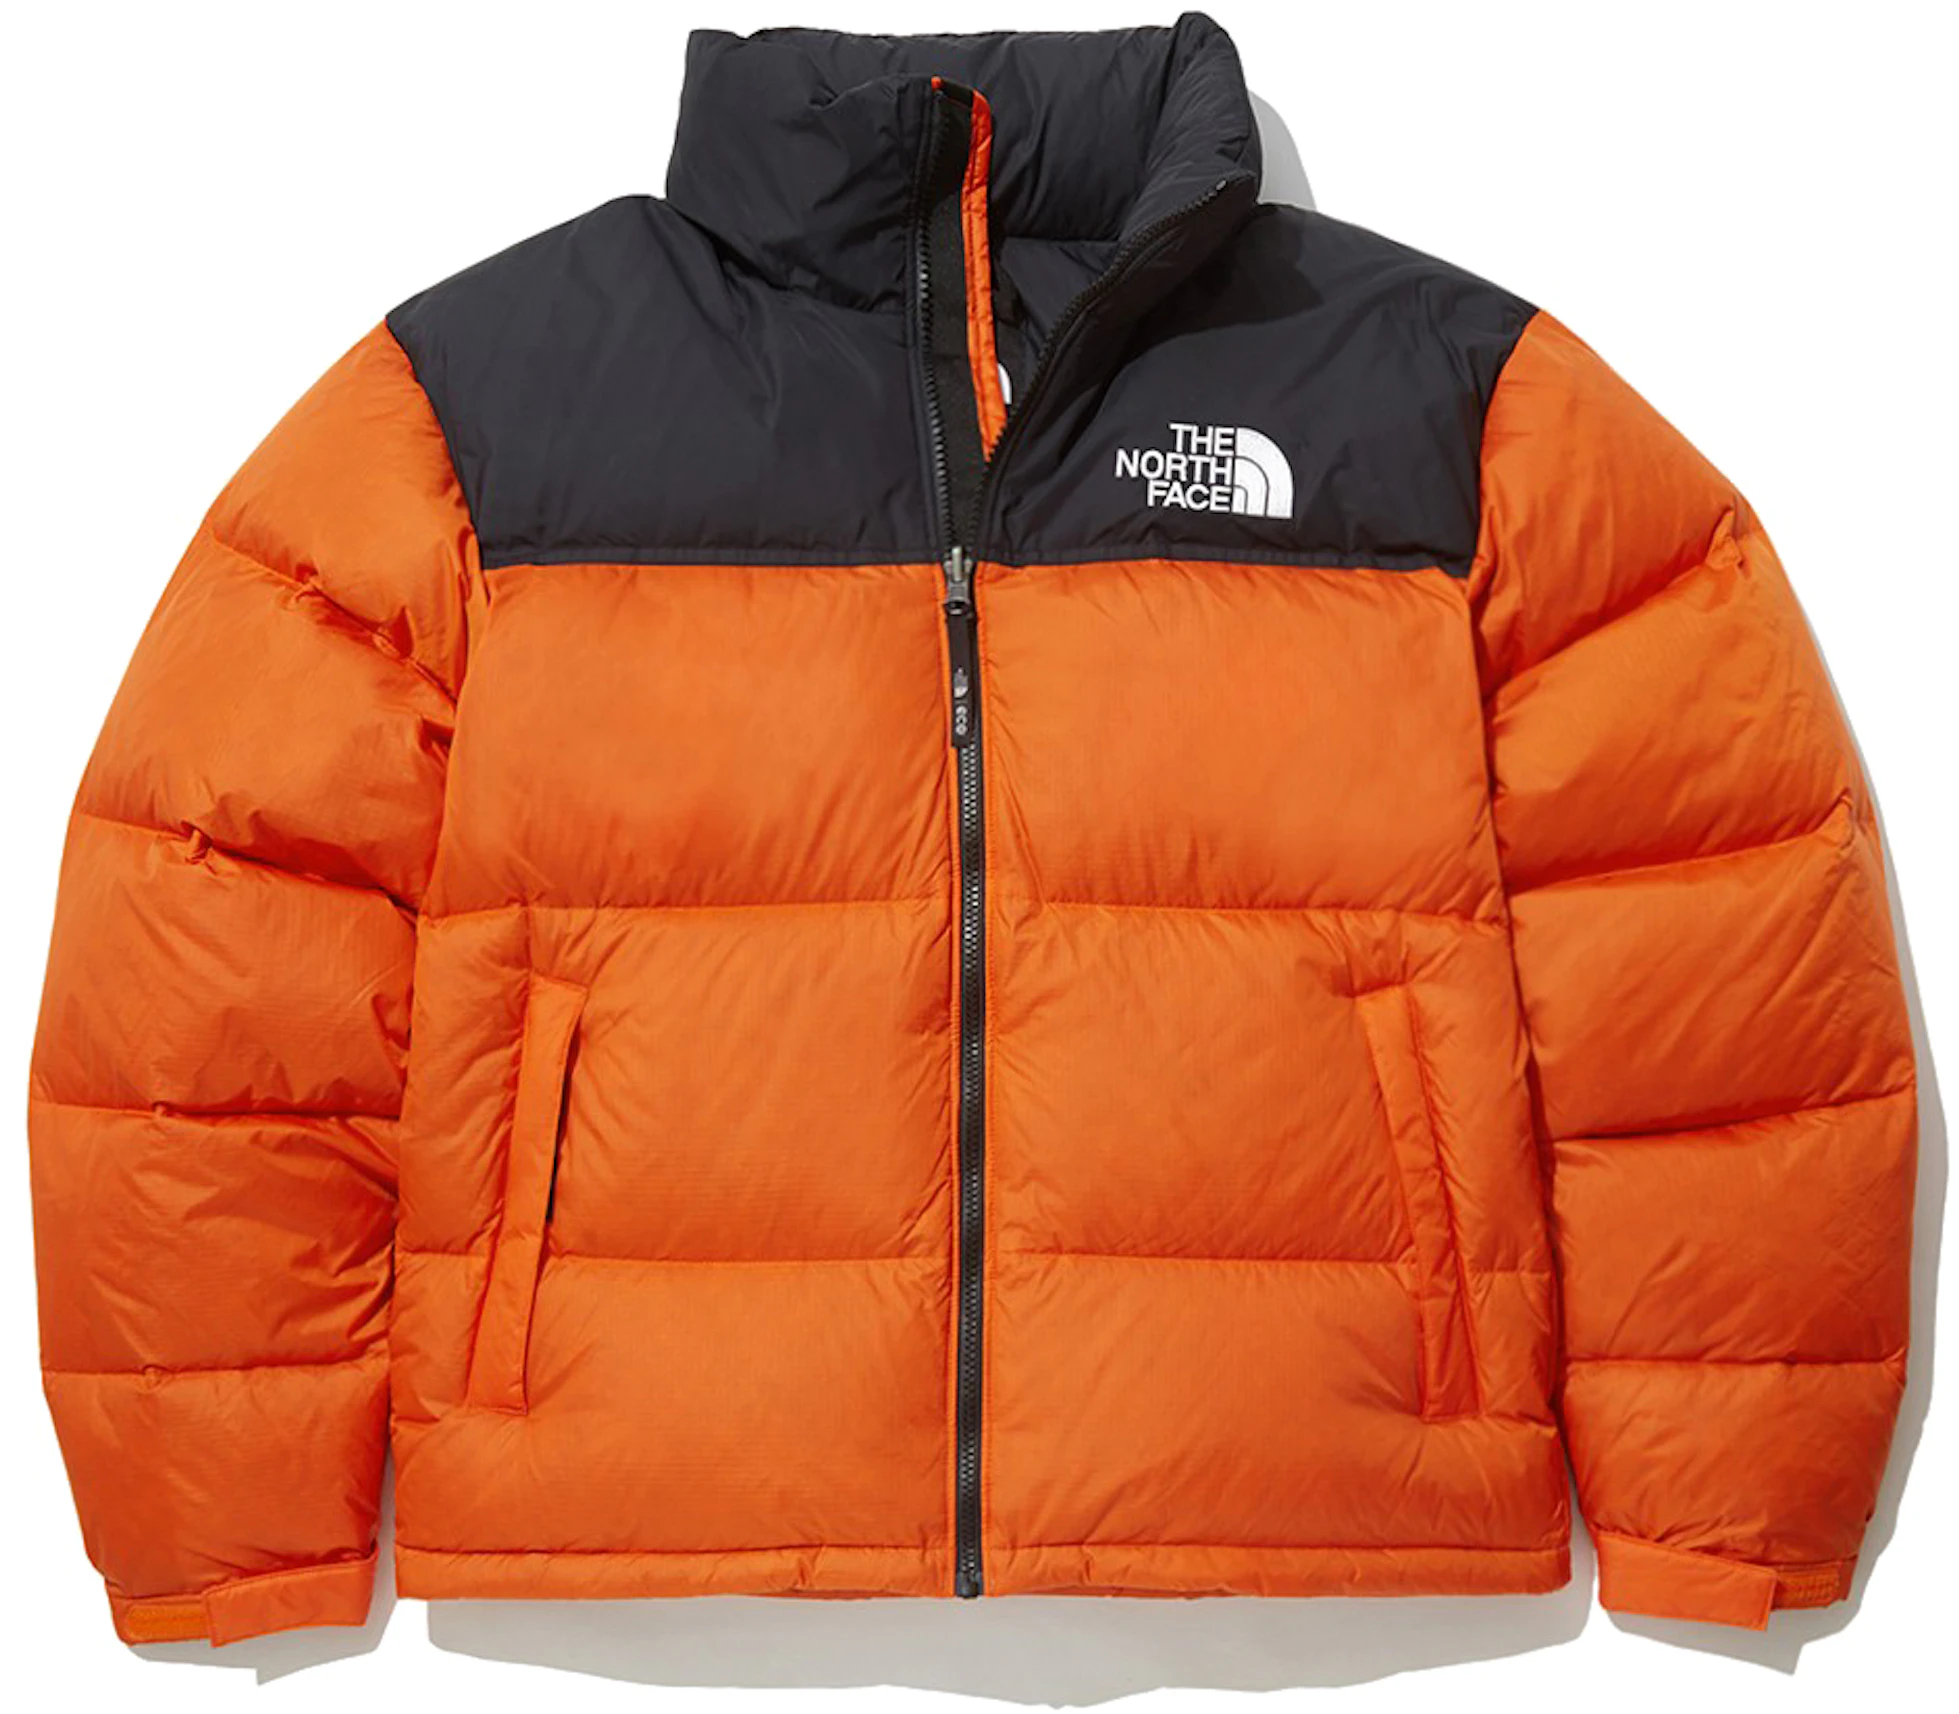 The North Face 1996 Retro Eco Nuptse Packable Jacket (Asia Sizing) Orange - - US